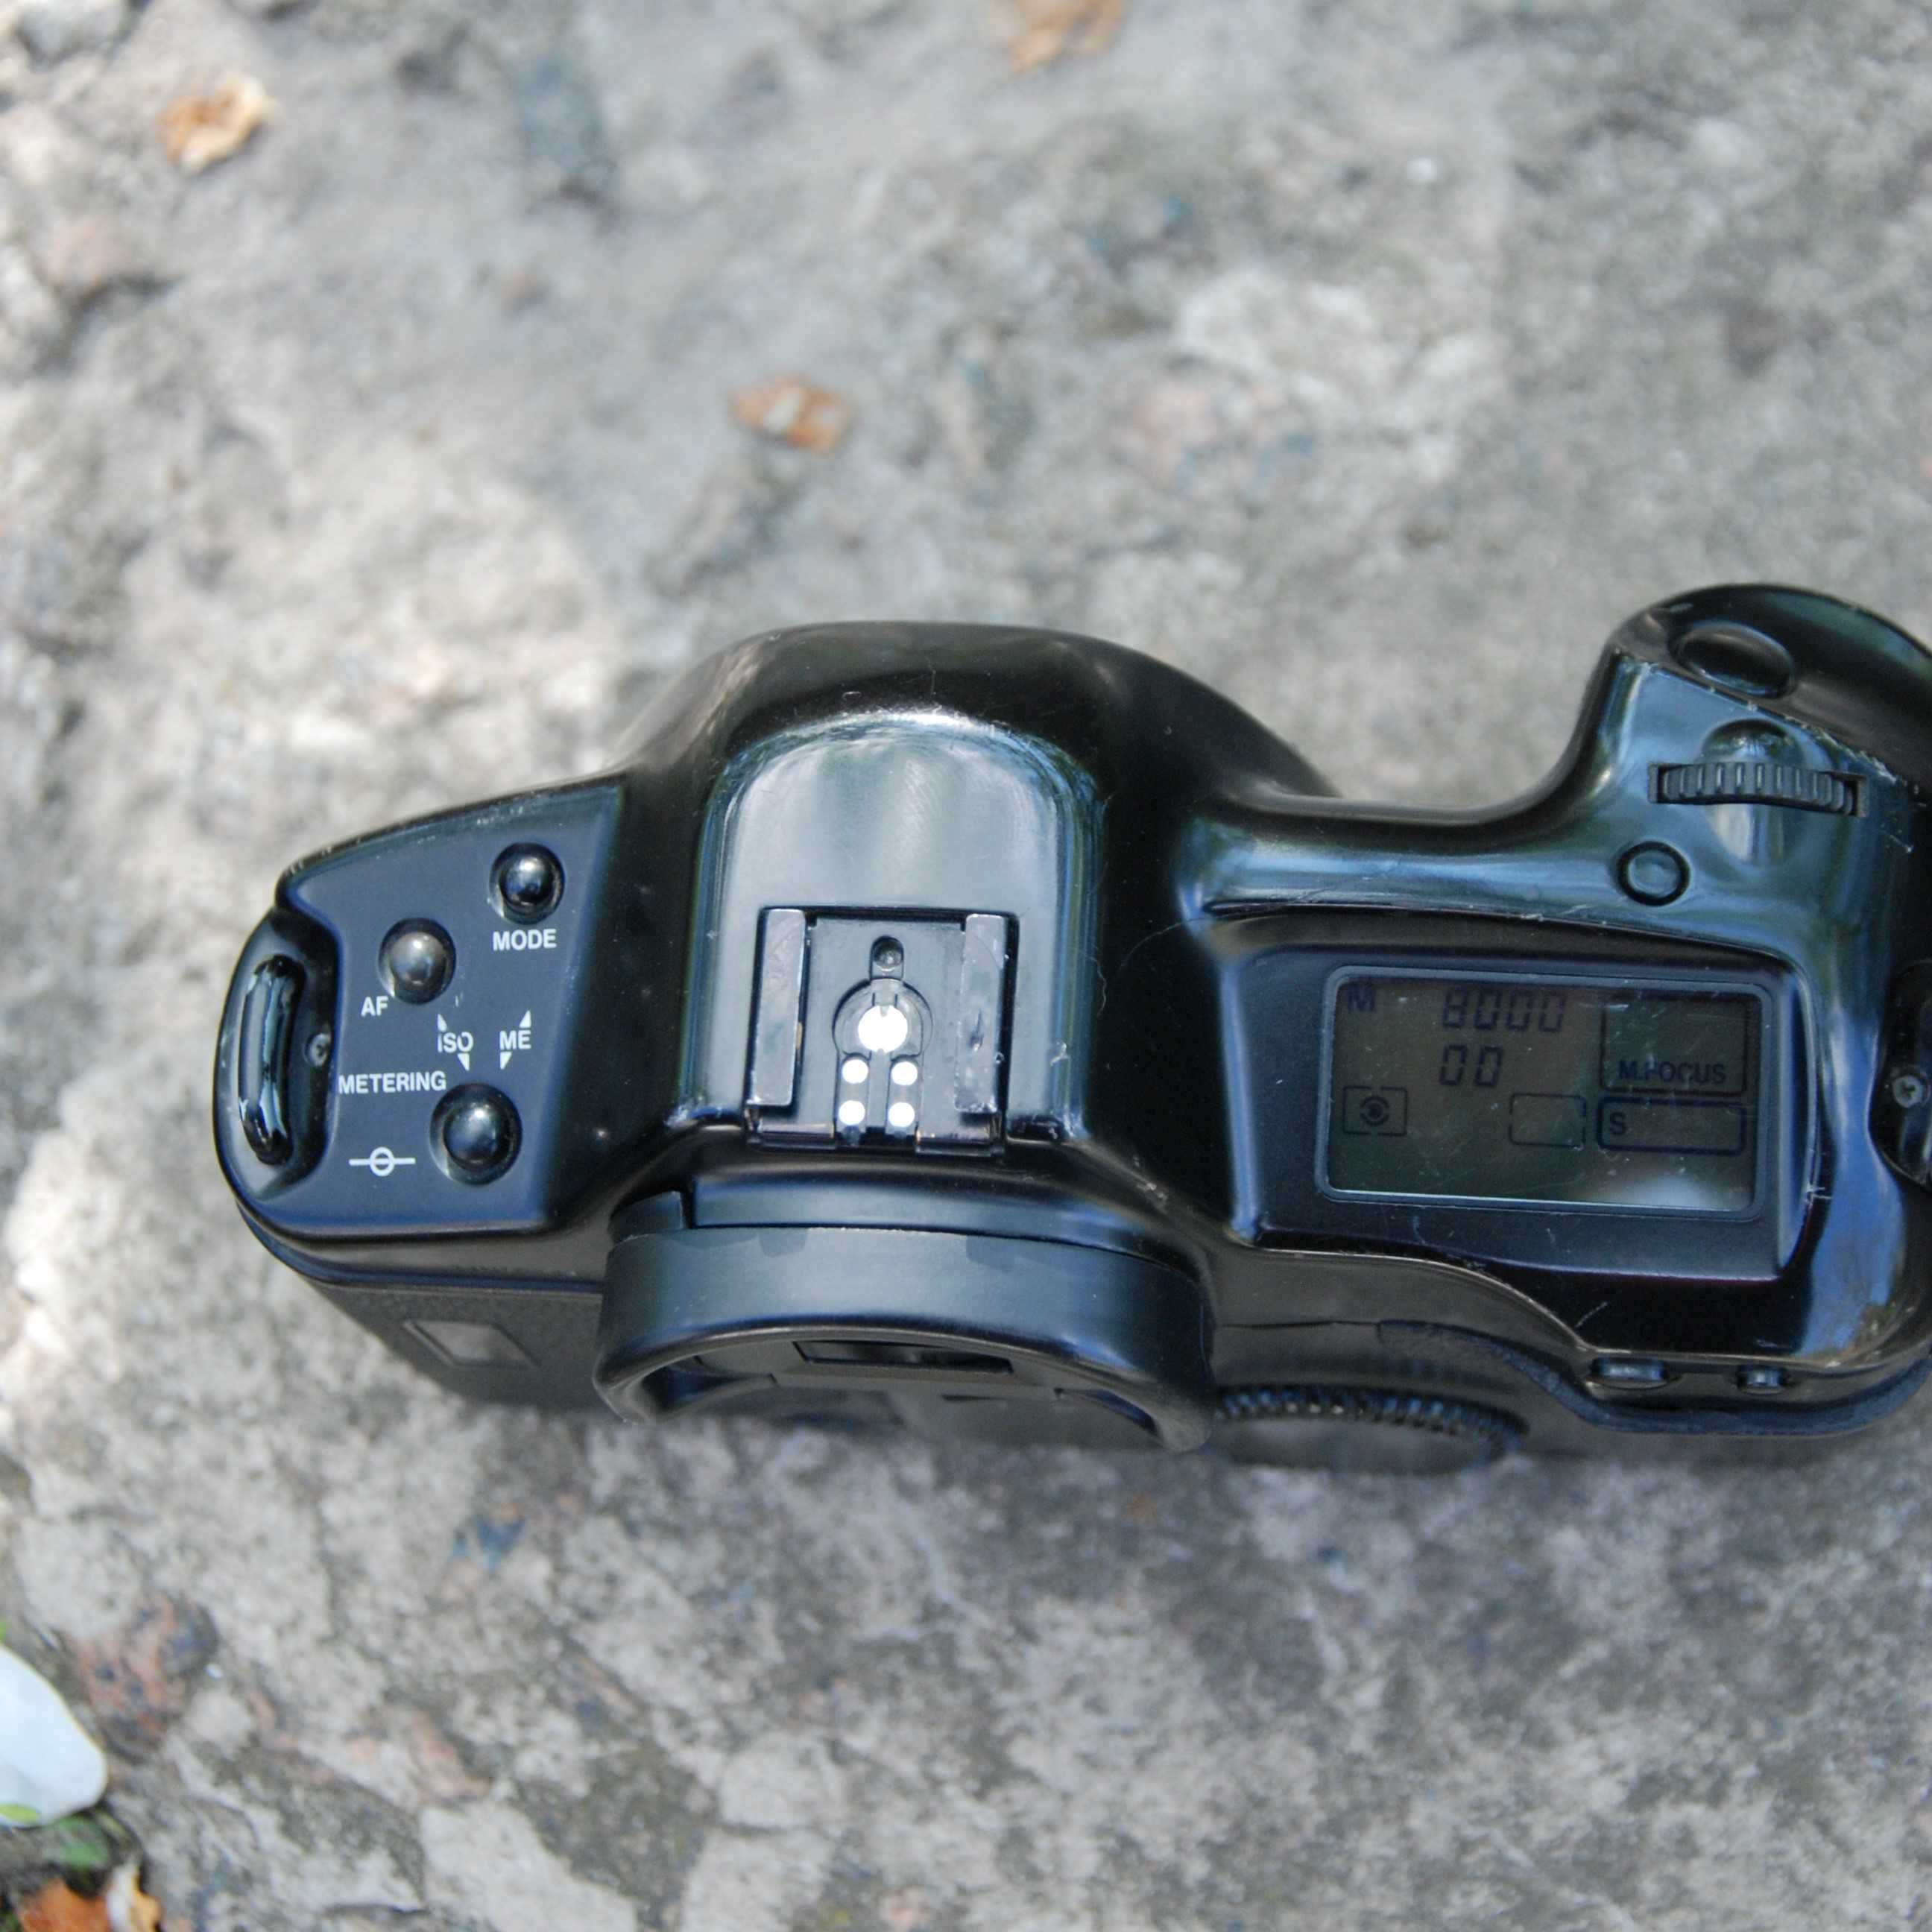 Плівковий дзеркальний професійний фотоапарат Canon EOS 1 (n, v) 2cr5